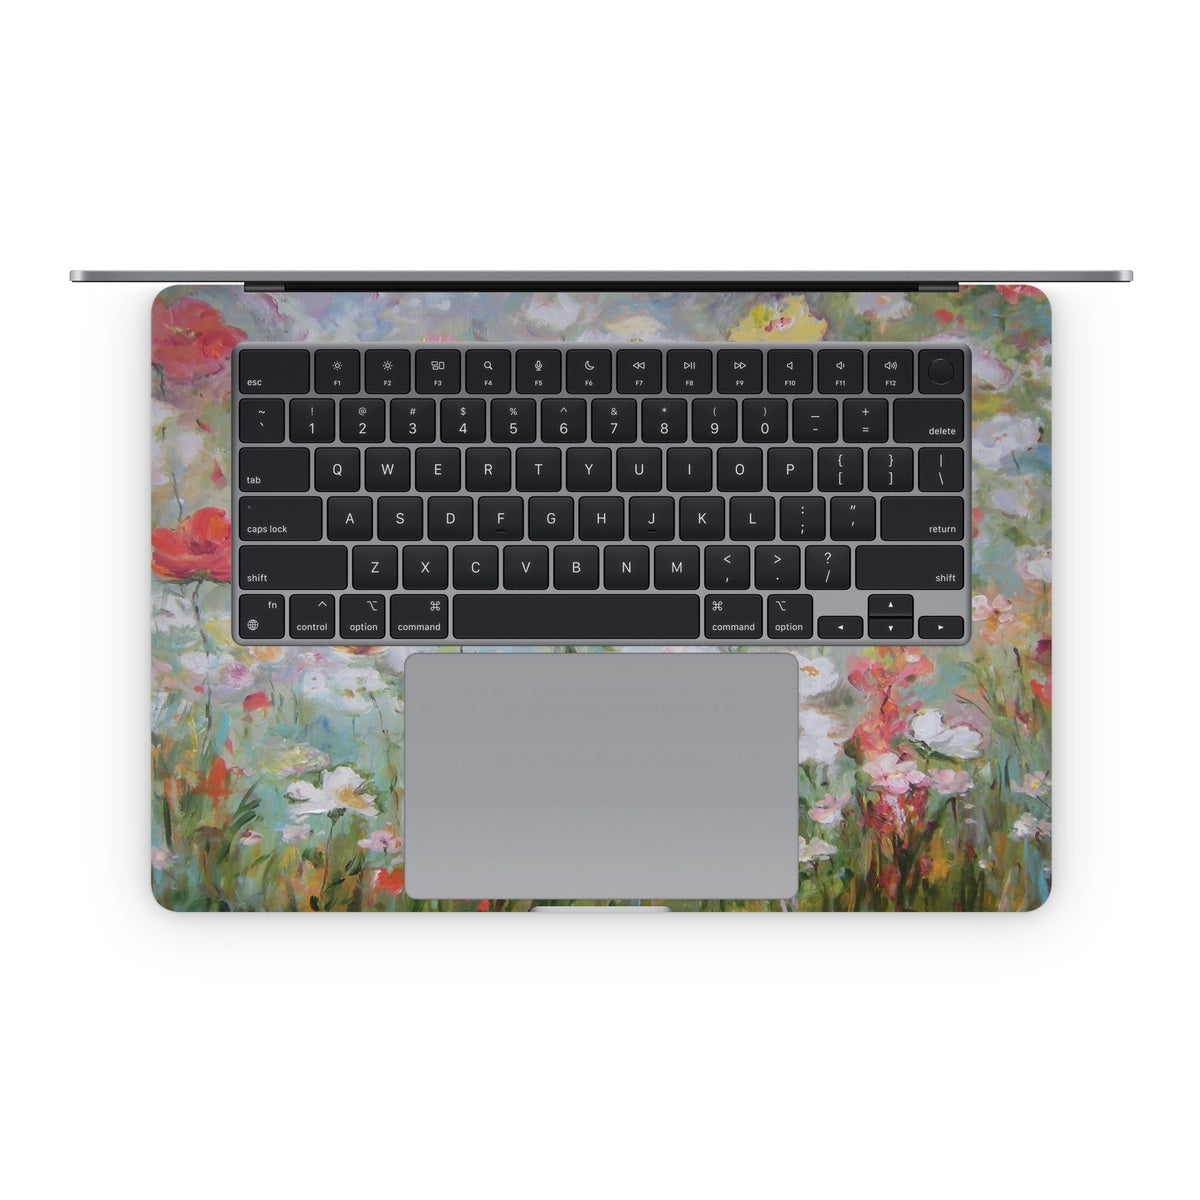 Flower Blooms - Apple MacBook Skin